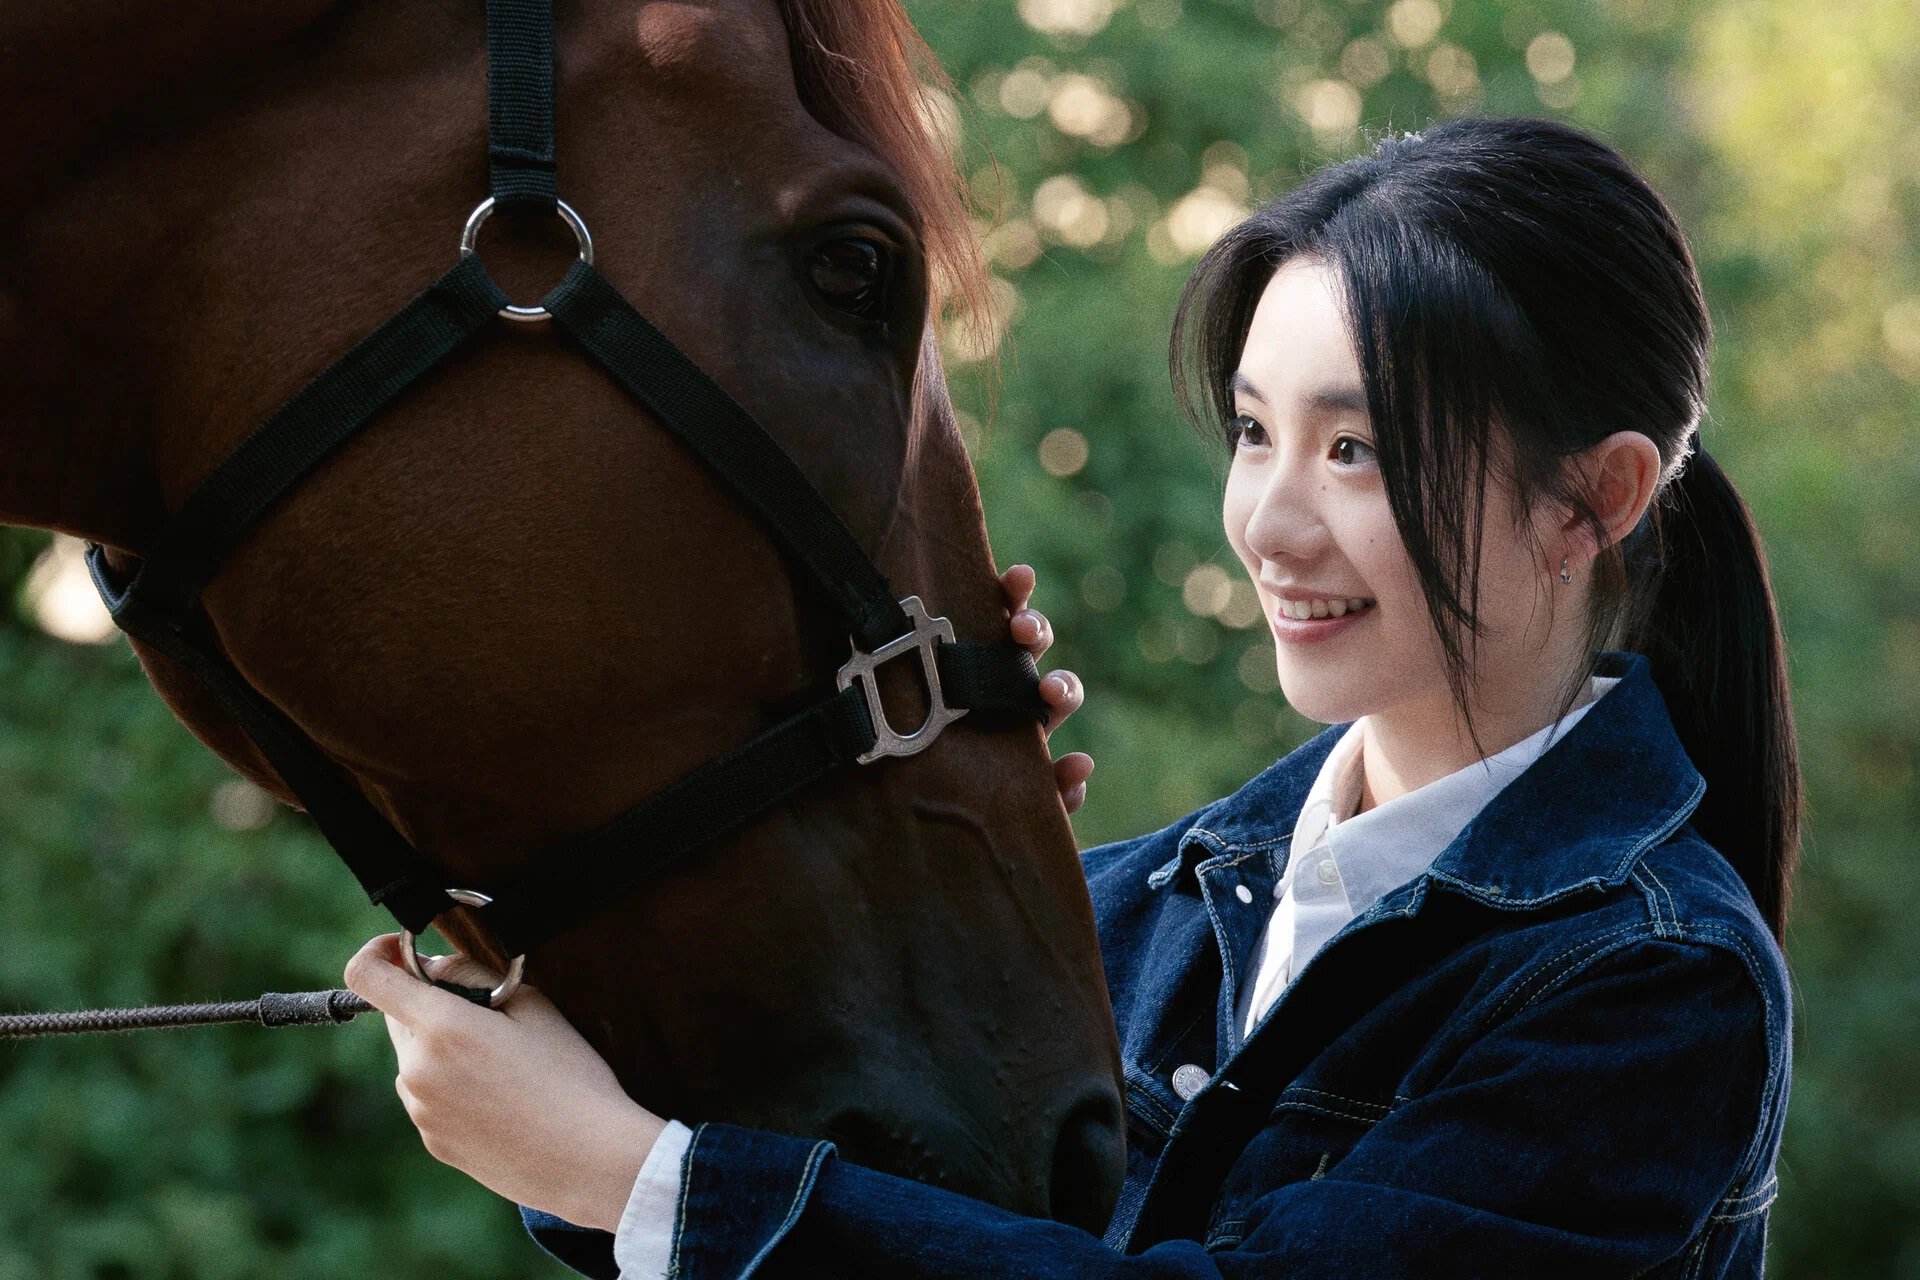 Обзор фильма Кунг-фу жеребец с Джеки Чаном, оценки, стоит ли смотреть стыдную драму, в которой Джеки учит дракам коня?